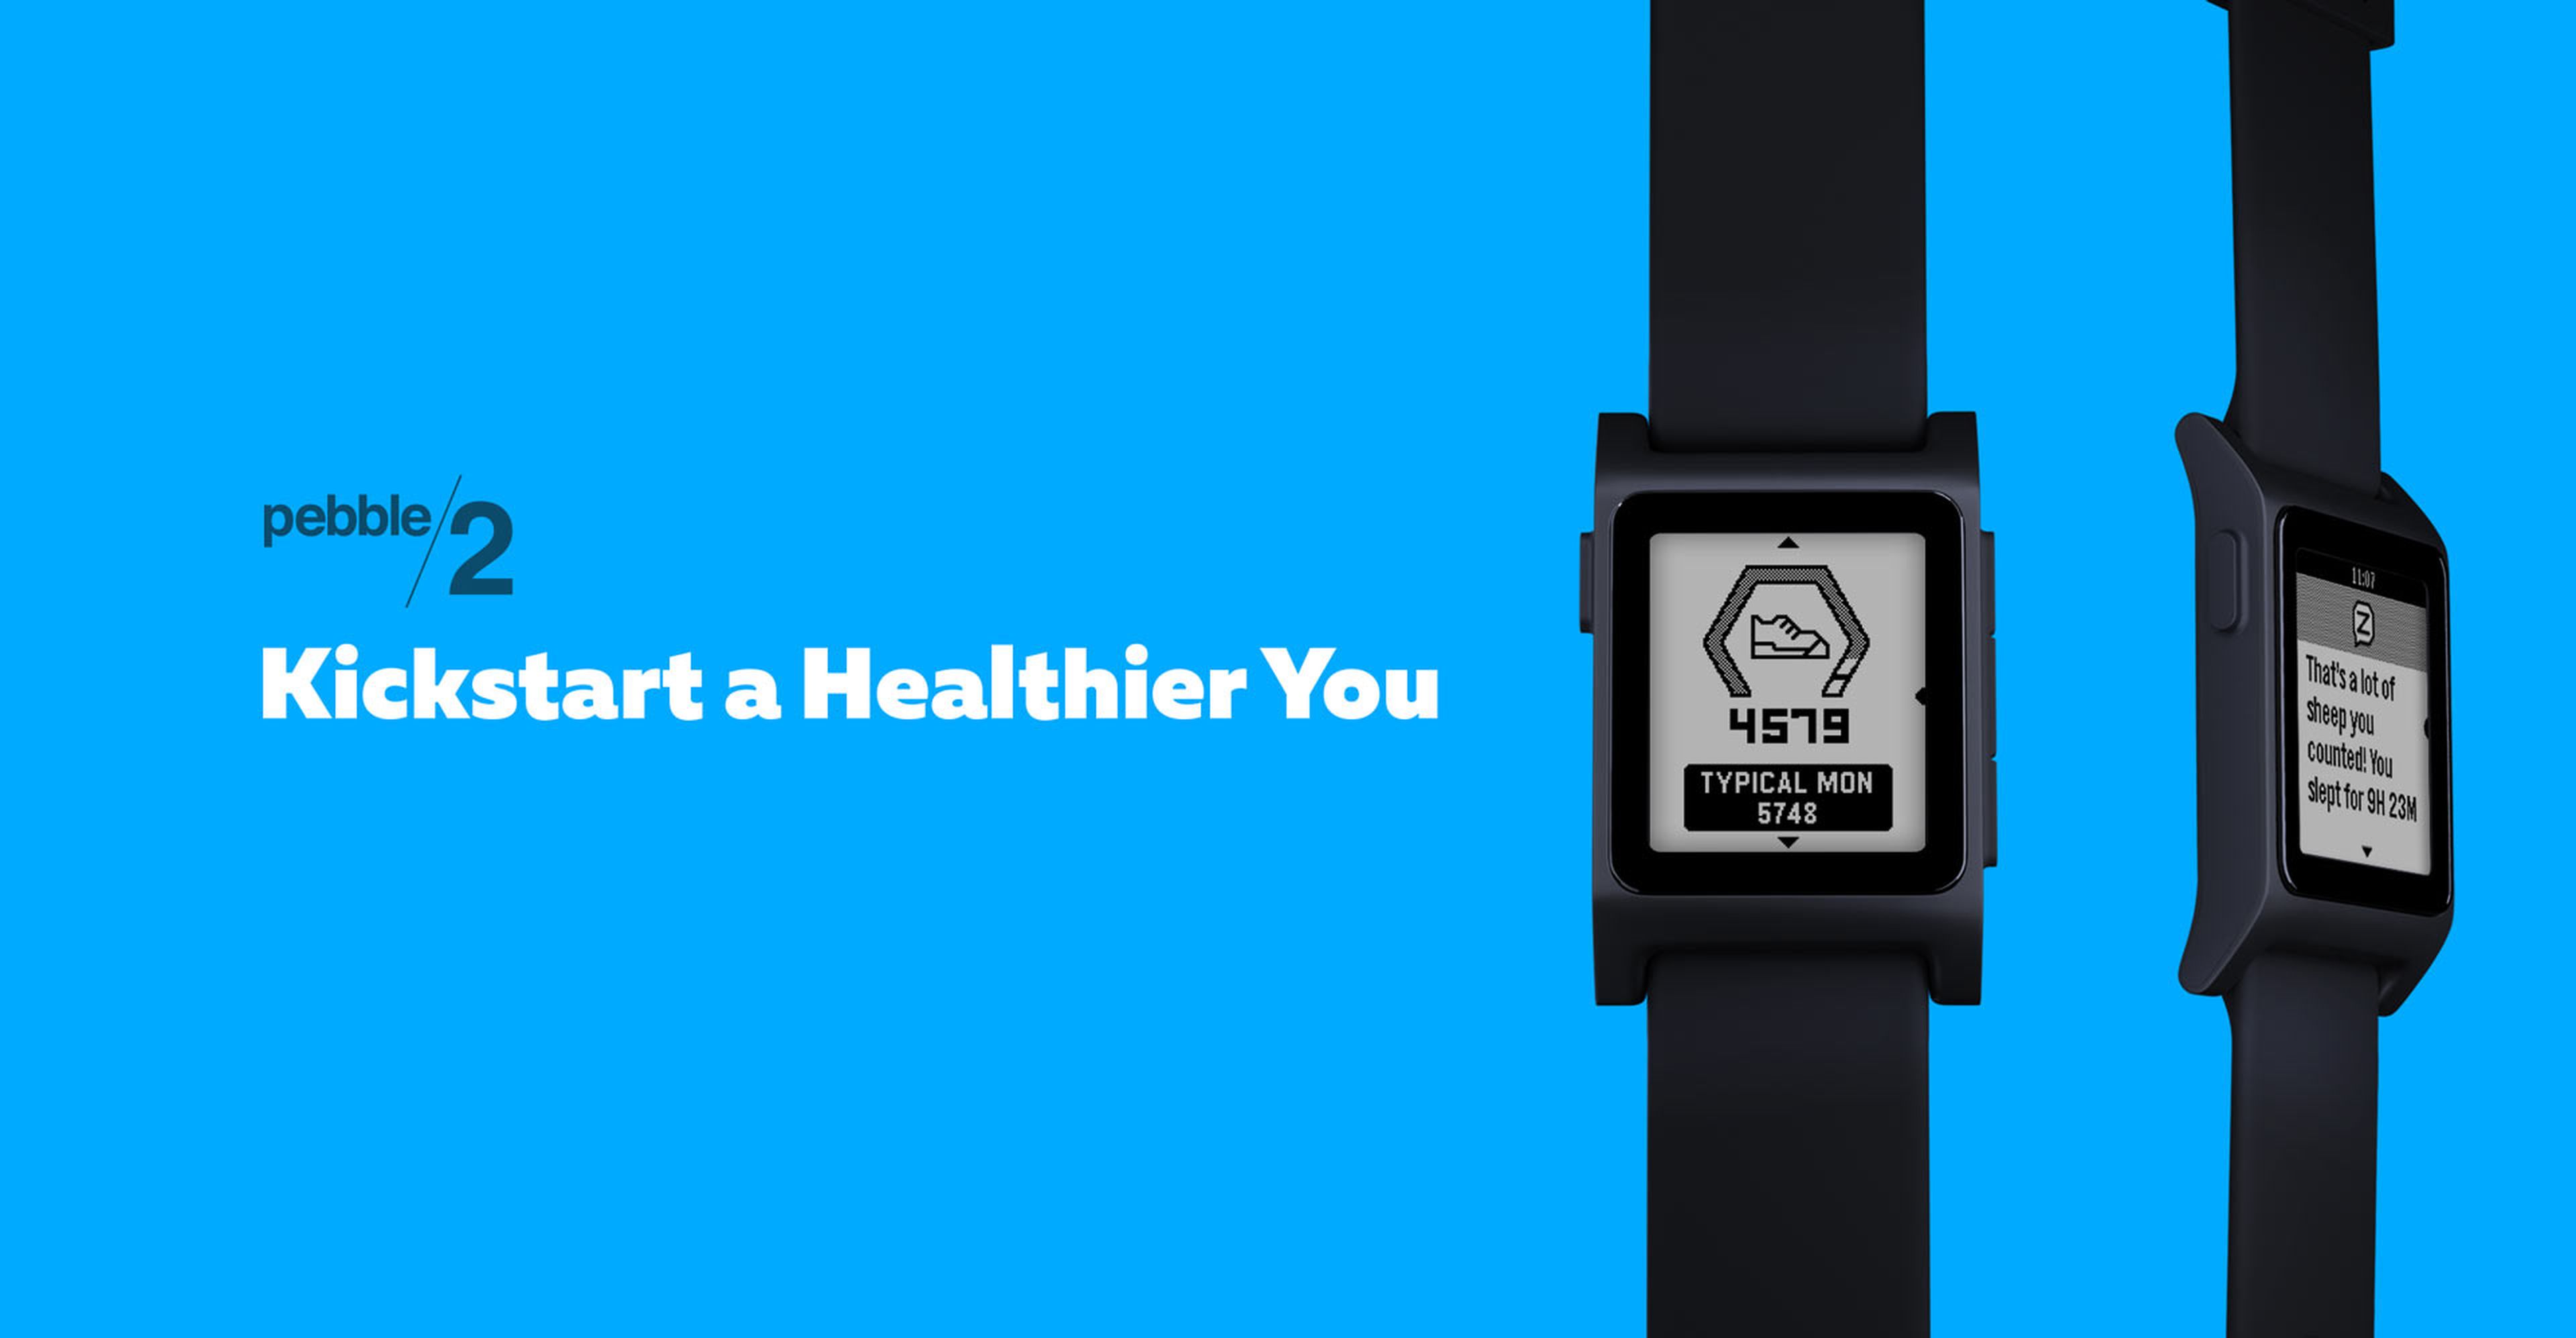 Estos son los mejores smartwatch que puedes comprar en 2016